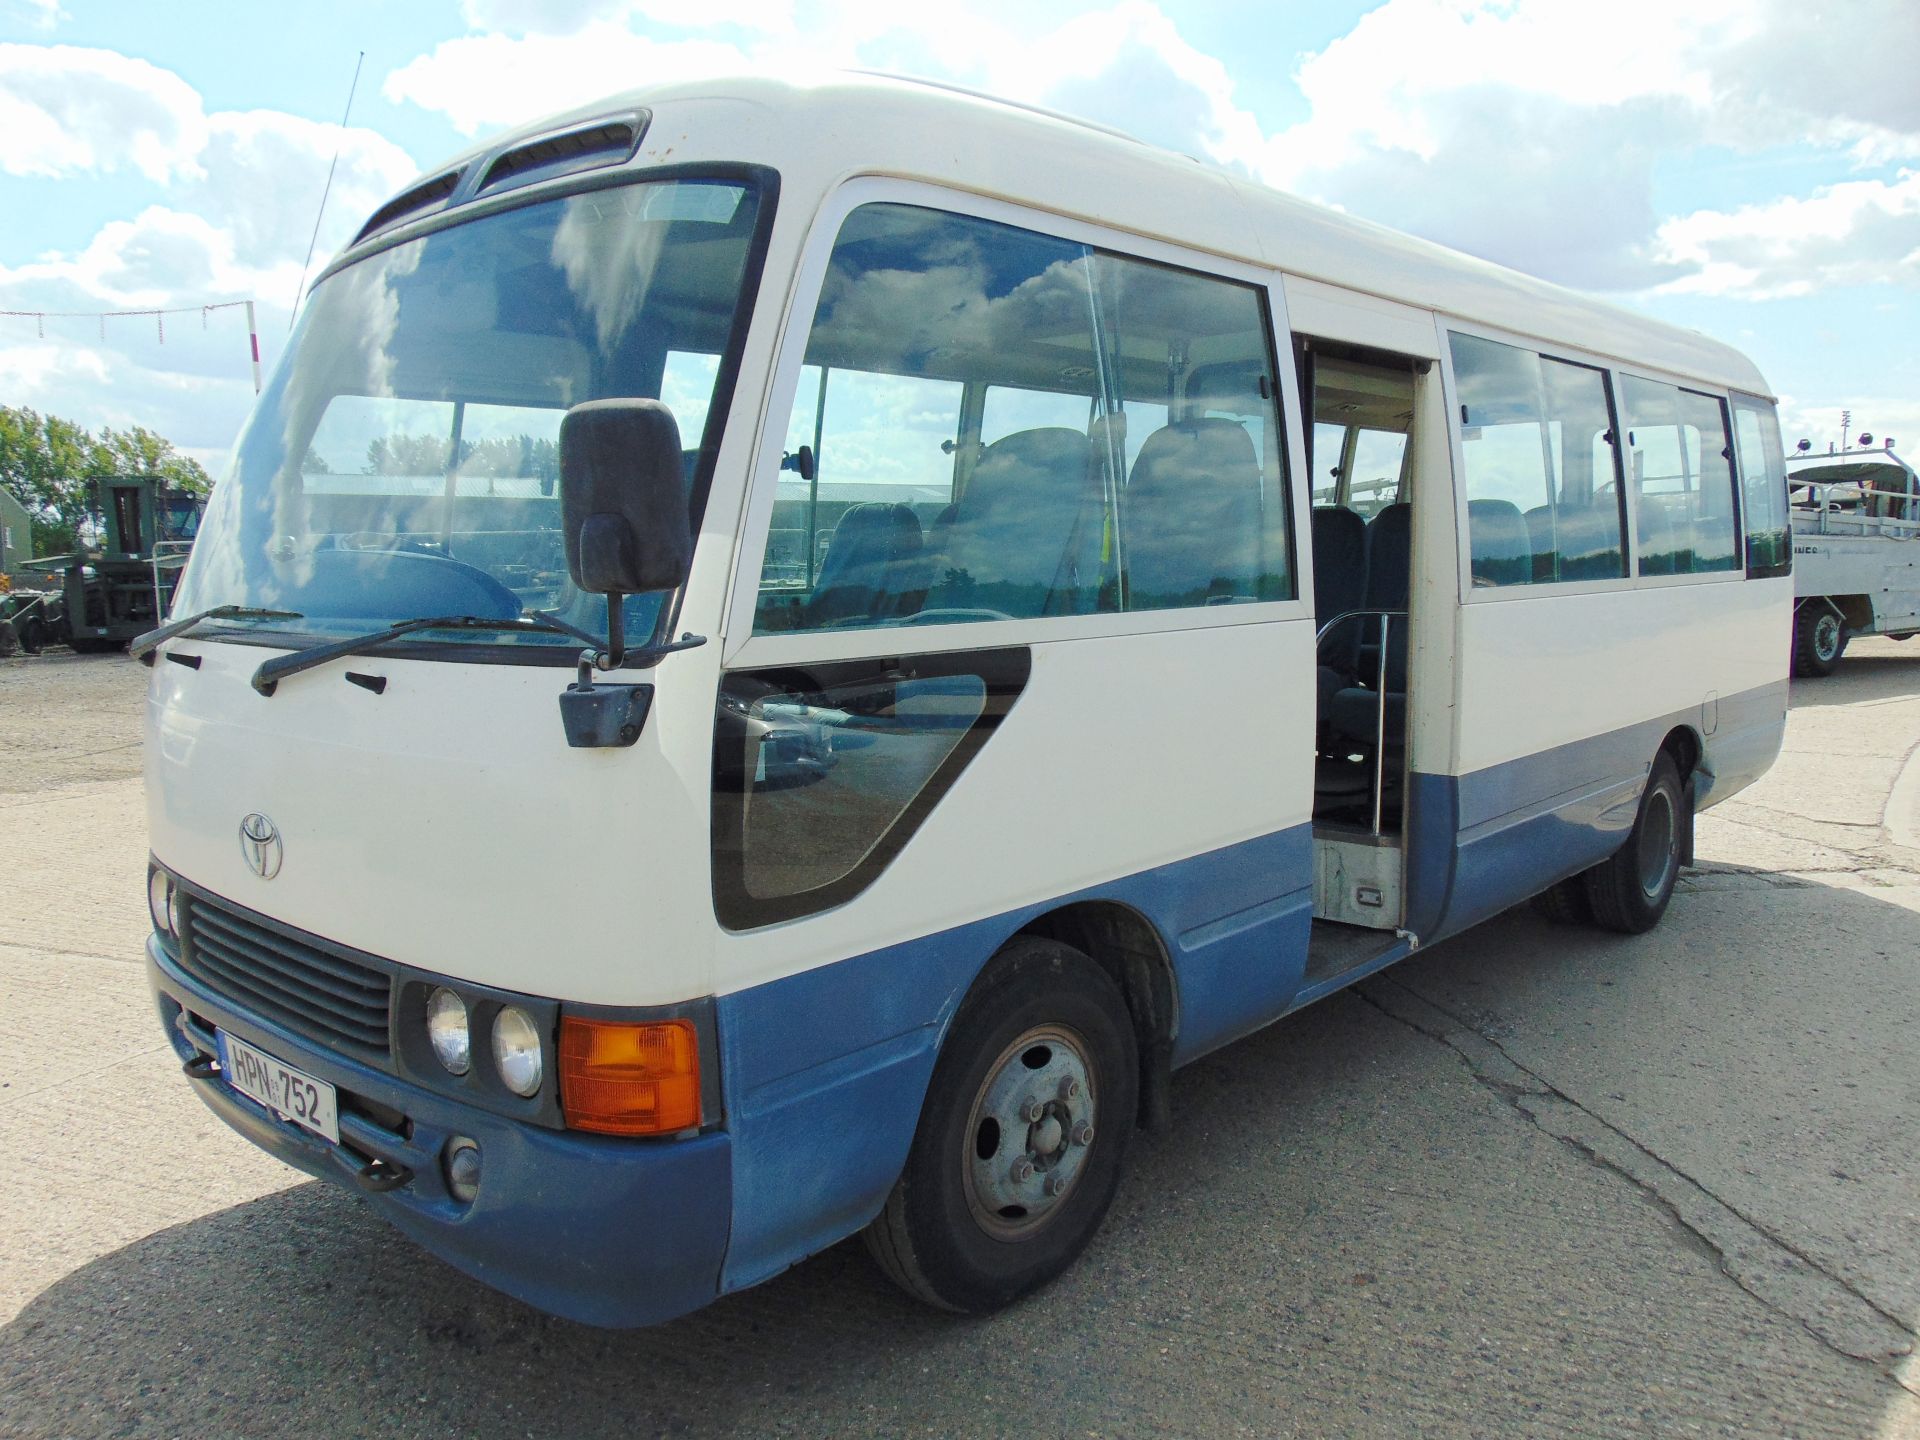 Toyota Coaster 21 seat Bus/Coach